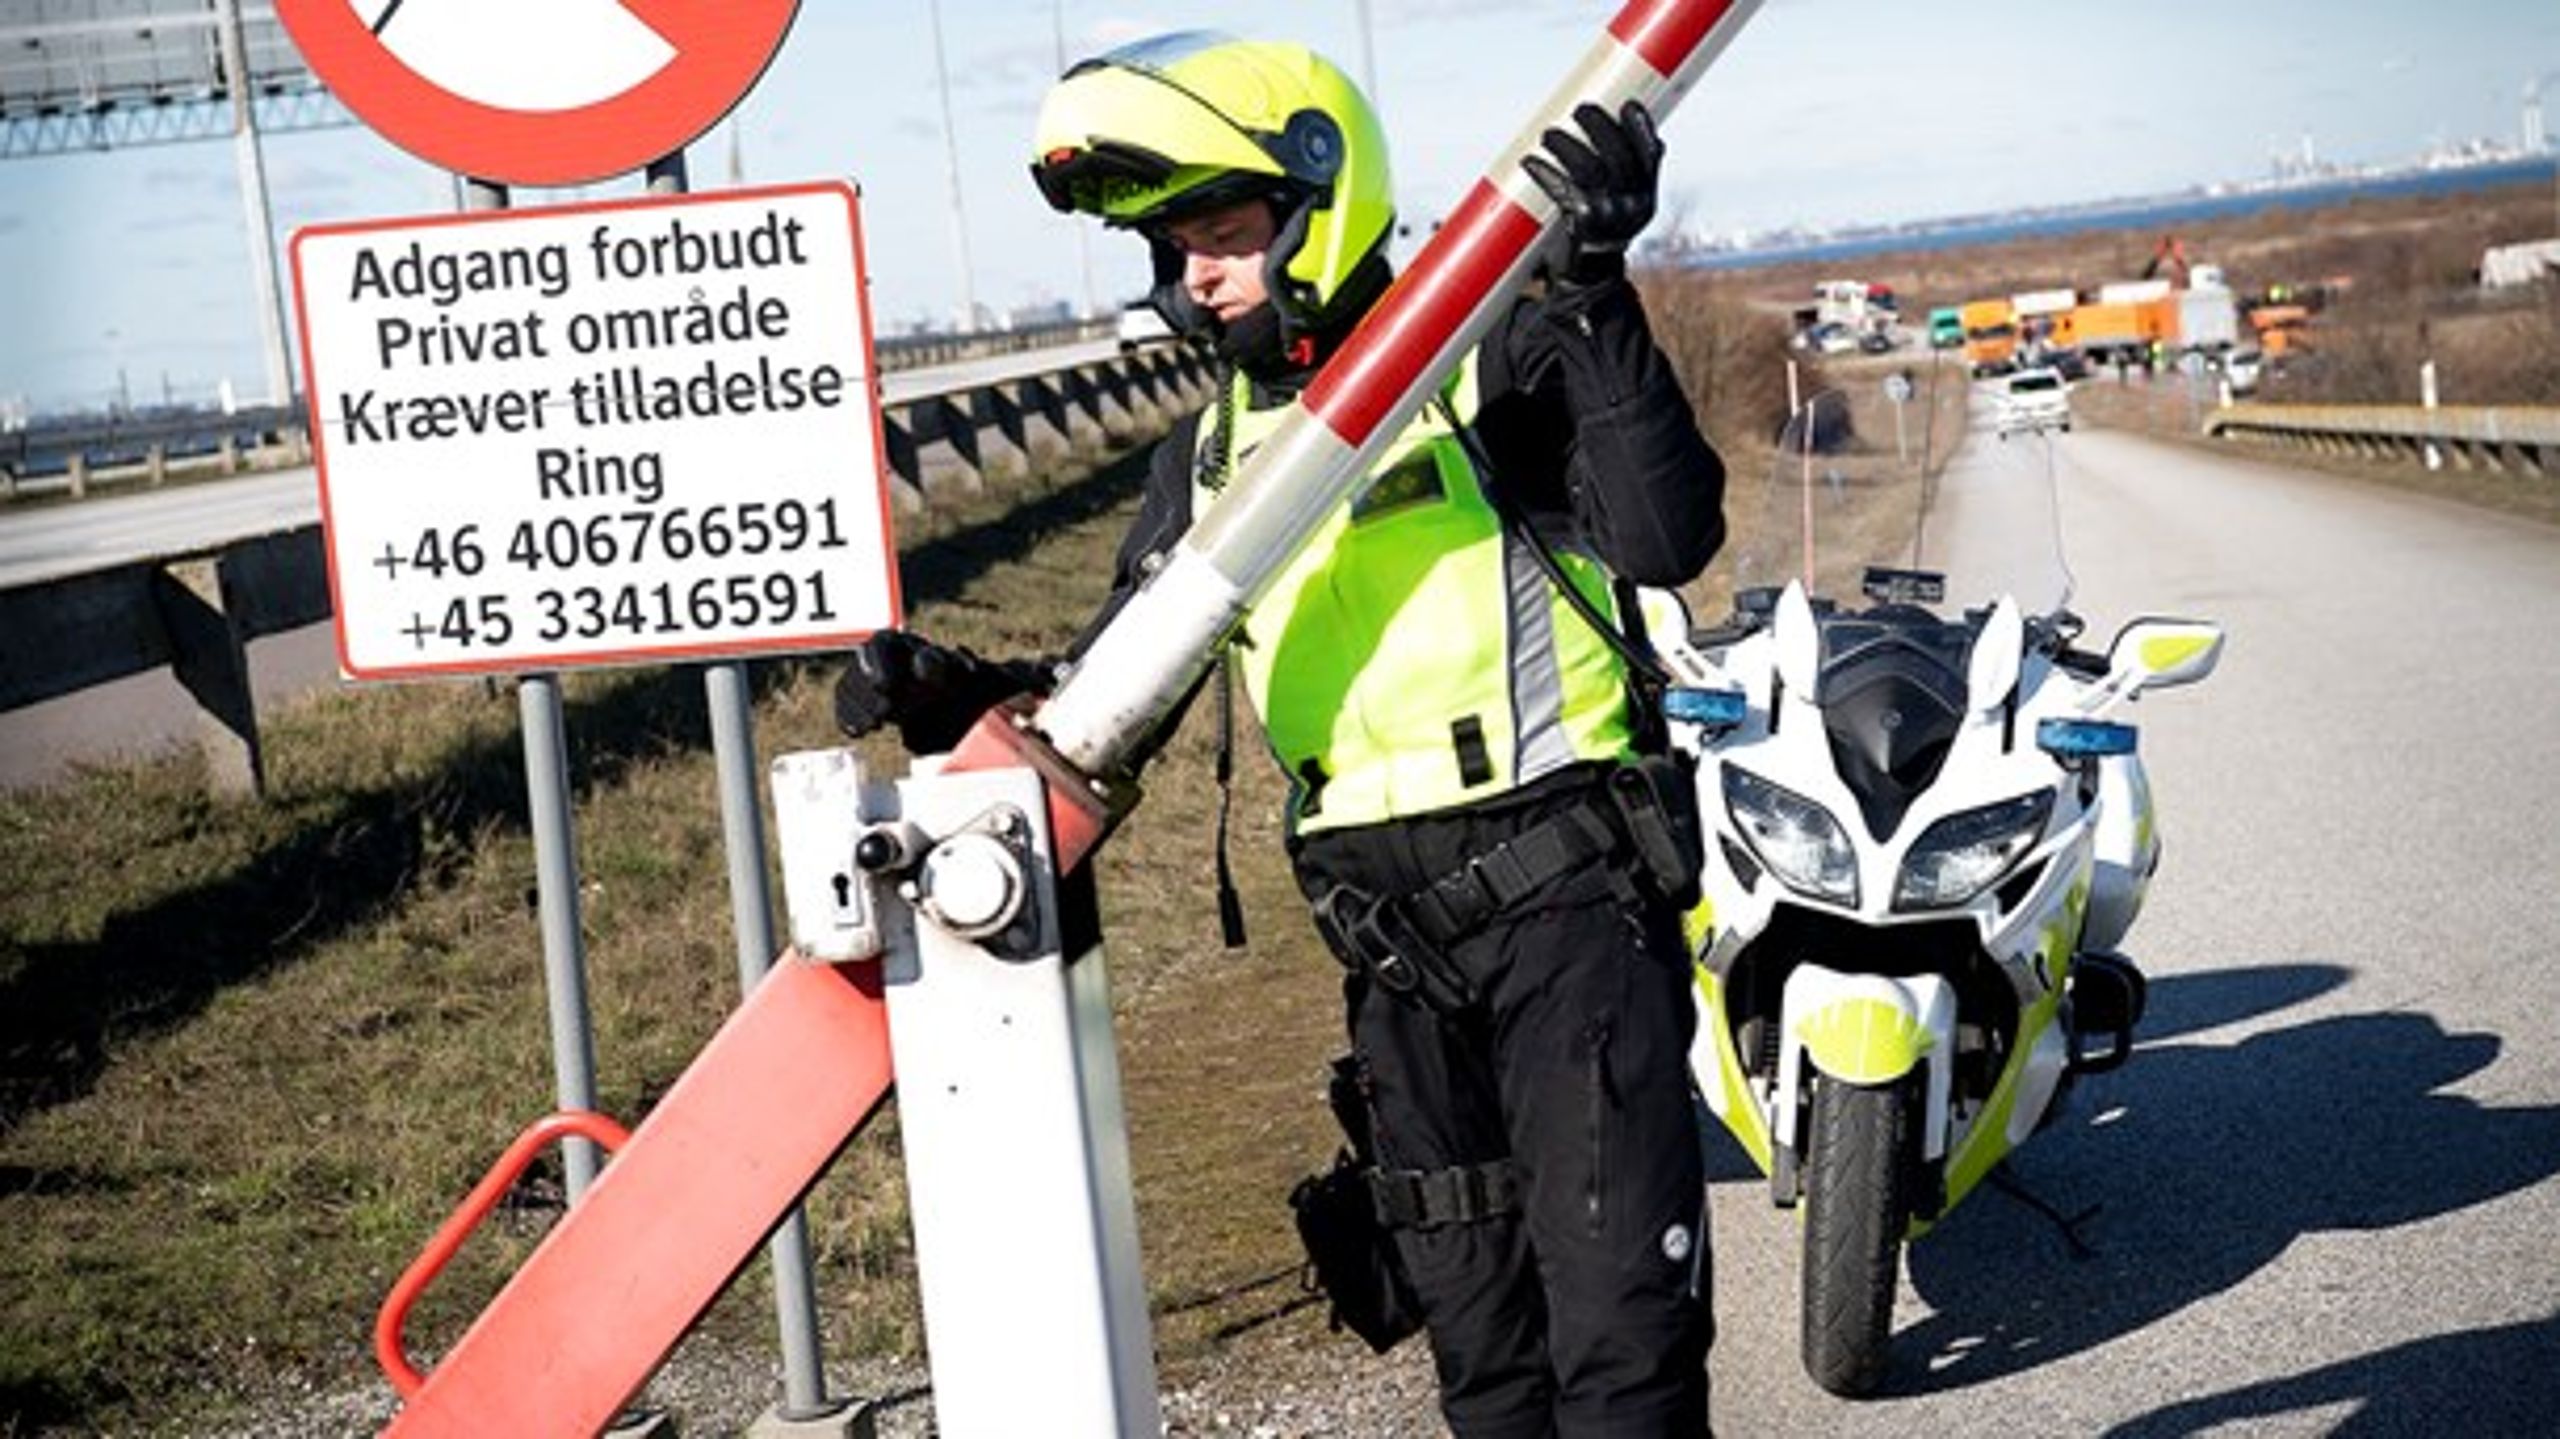 Regeringen har valgt at lukke alle danske grænser med virkning fra i dag lørdag klokken 12 med argumentet om, at det skal mindske udbredelsen af coronavirus. Her er det grænsen ved Øresundsbroen.